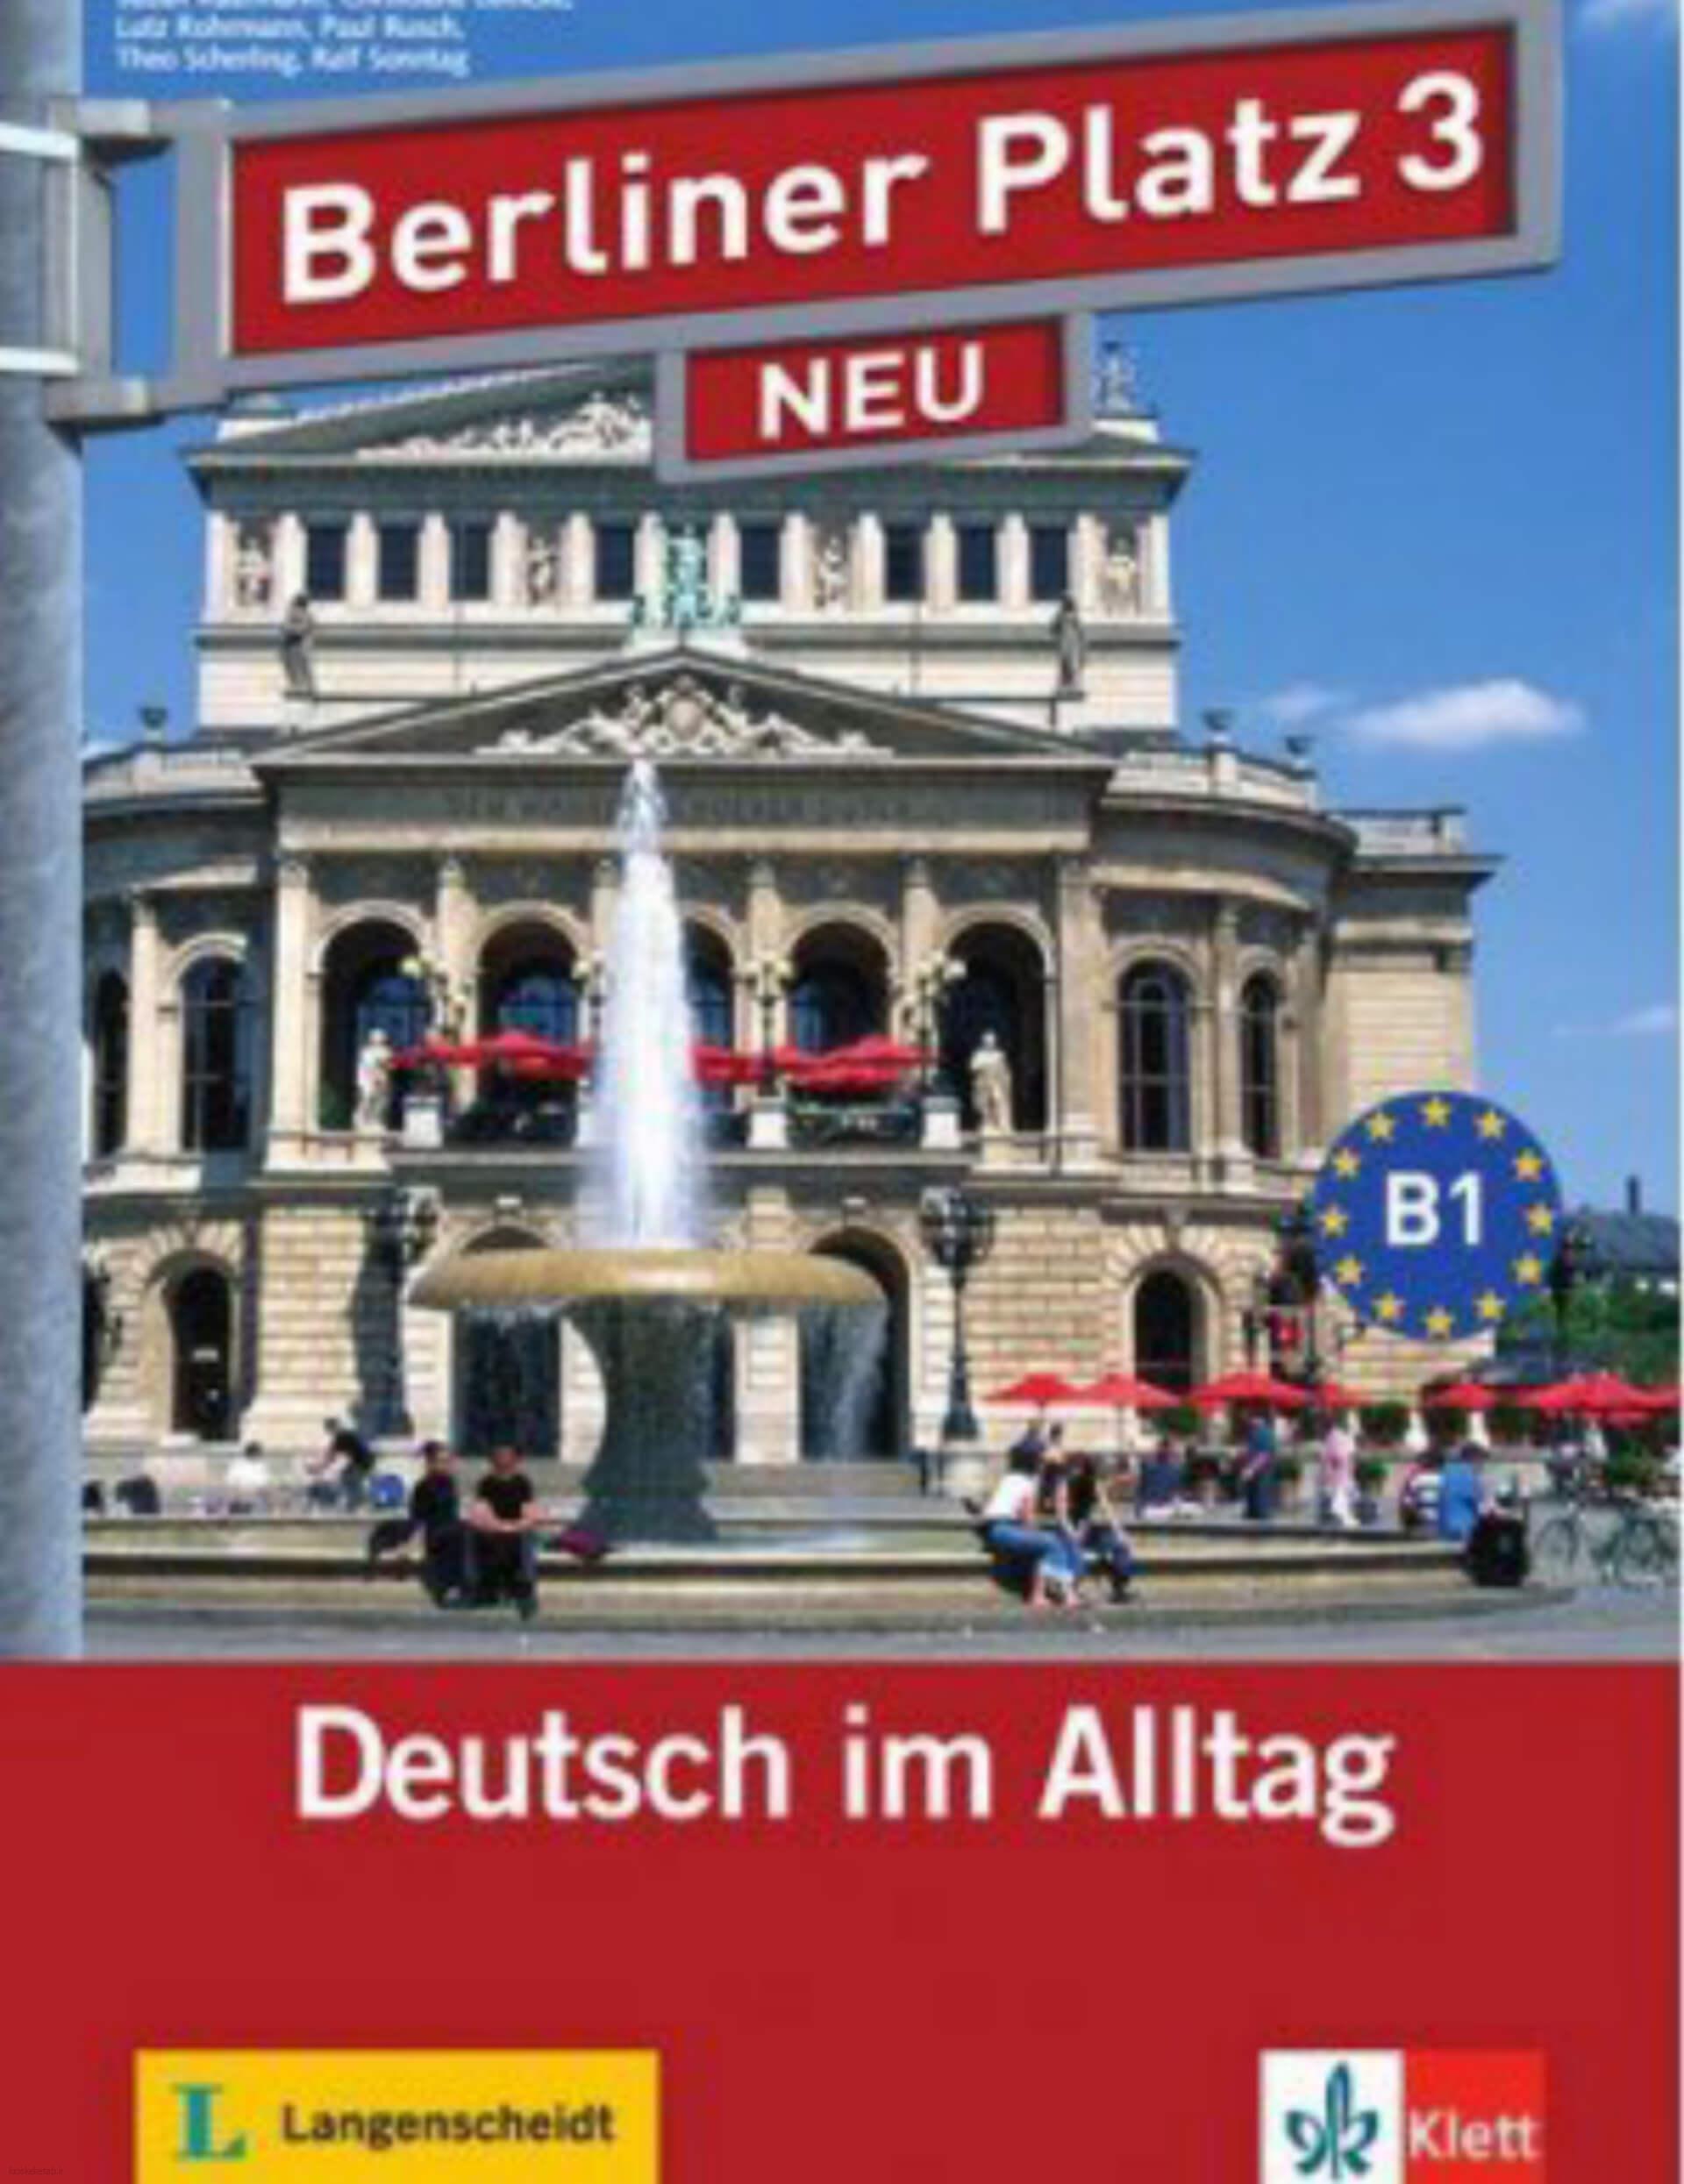 دانلود کتاب آلمانیBerliner Platz 3 Neu